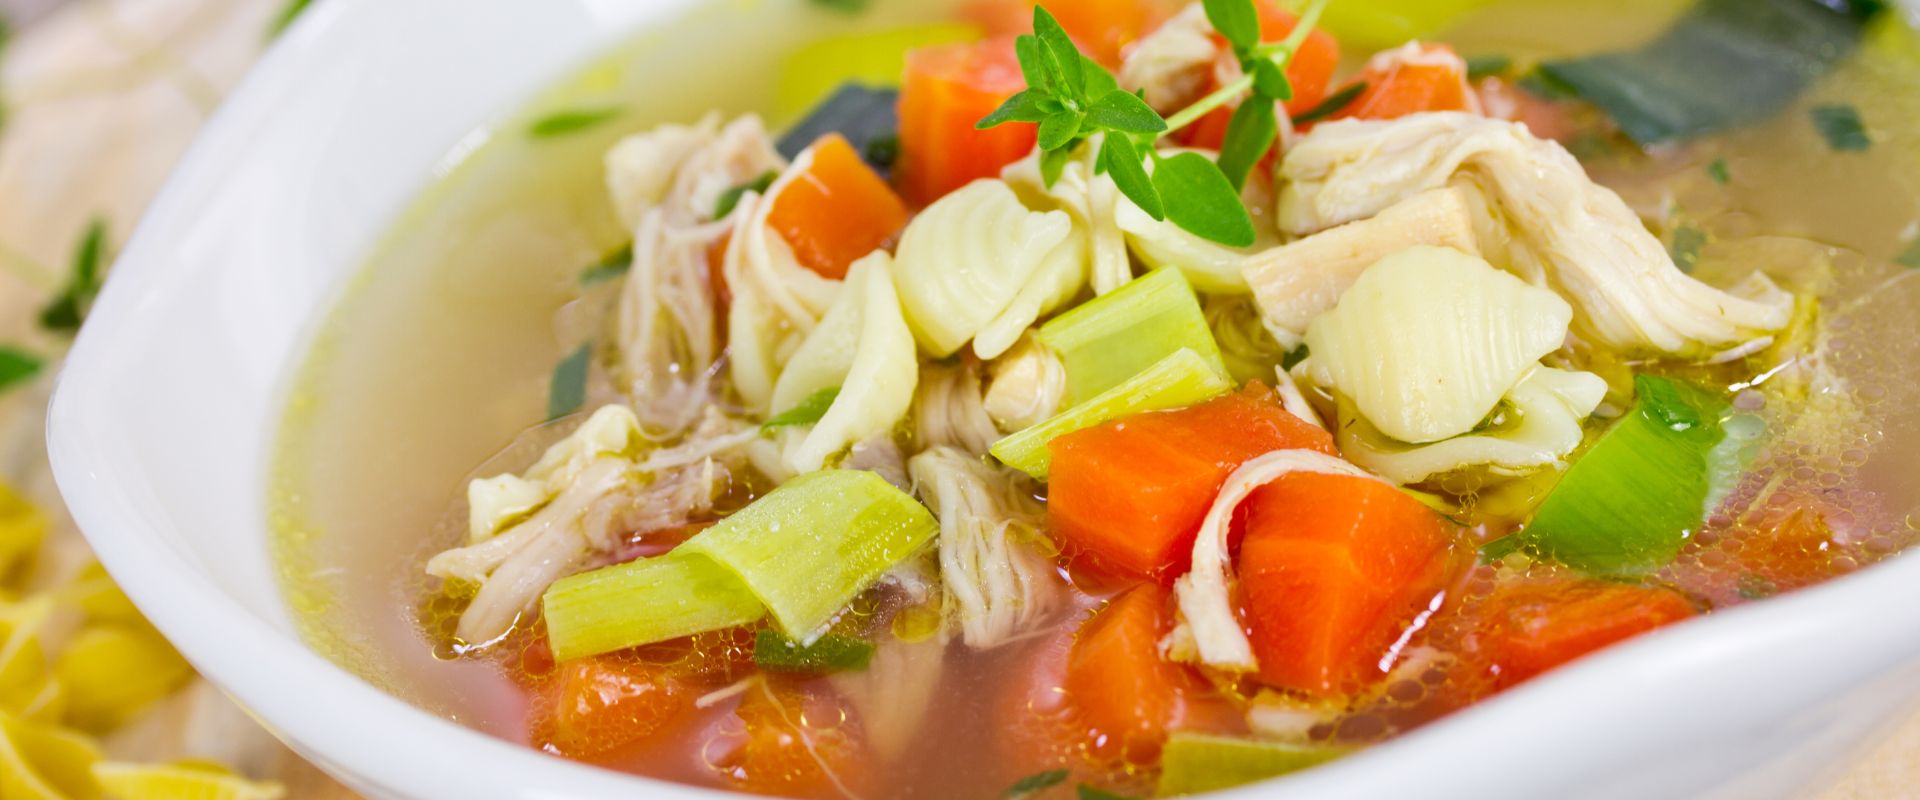 Sopa de verduras y pollo